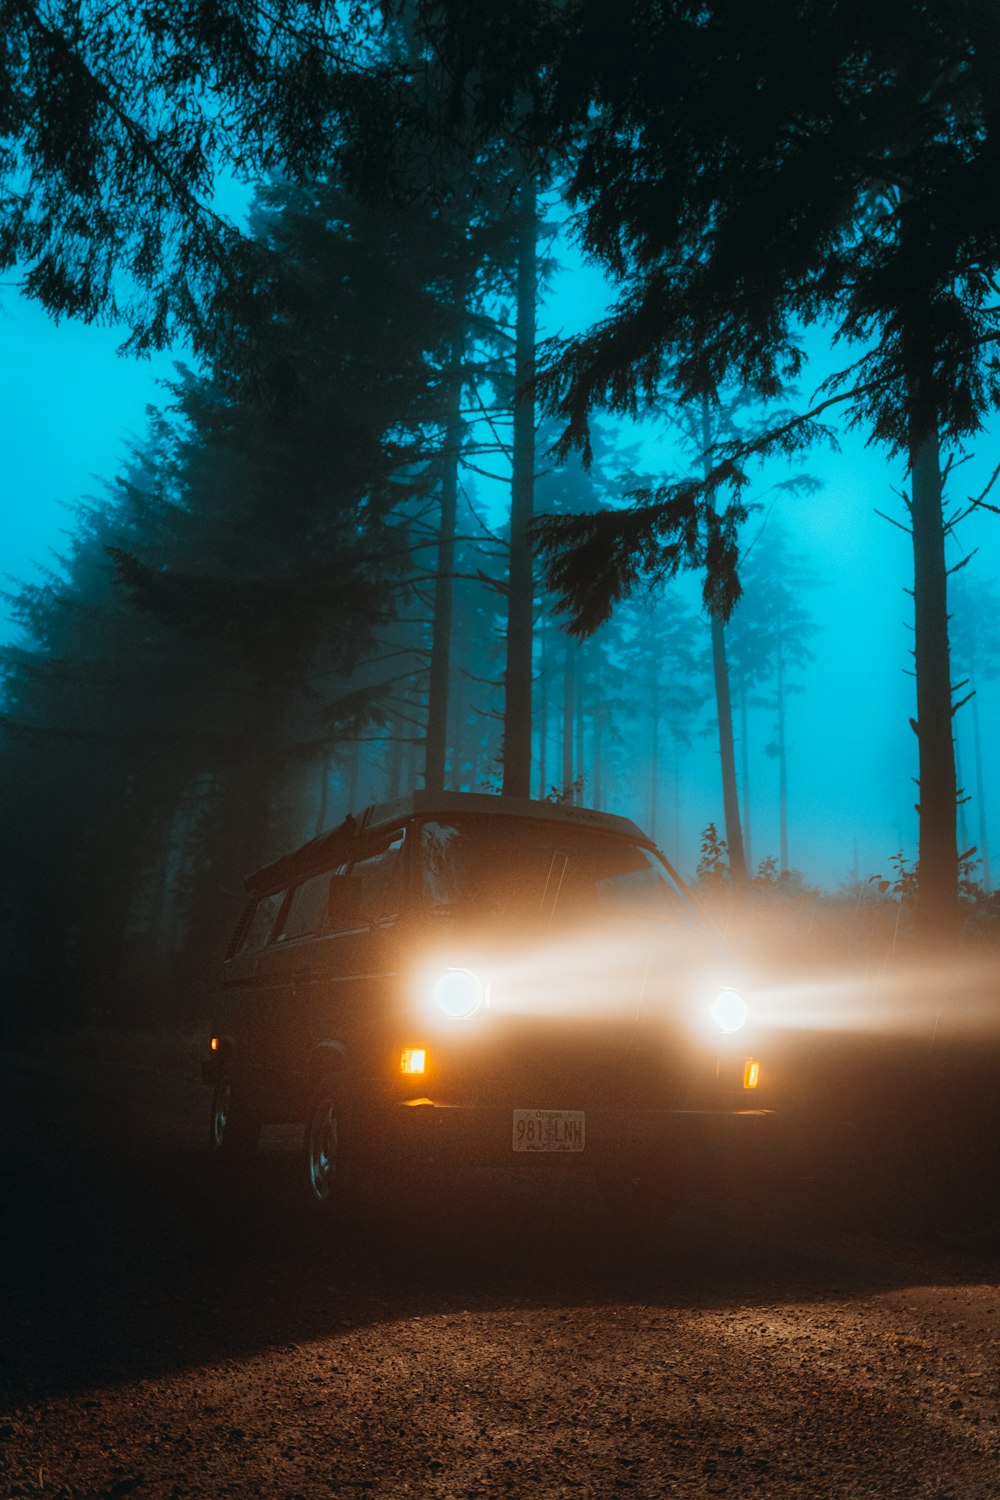 Coche negro en la carretera entre los árboles durante la noche